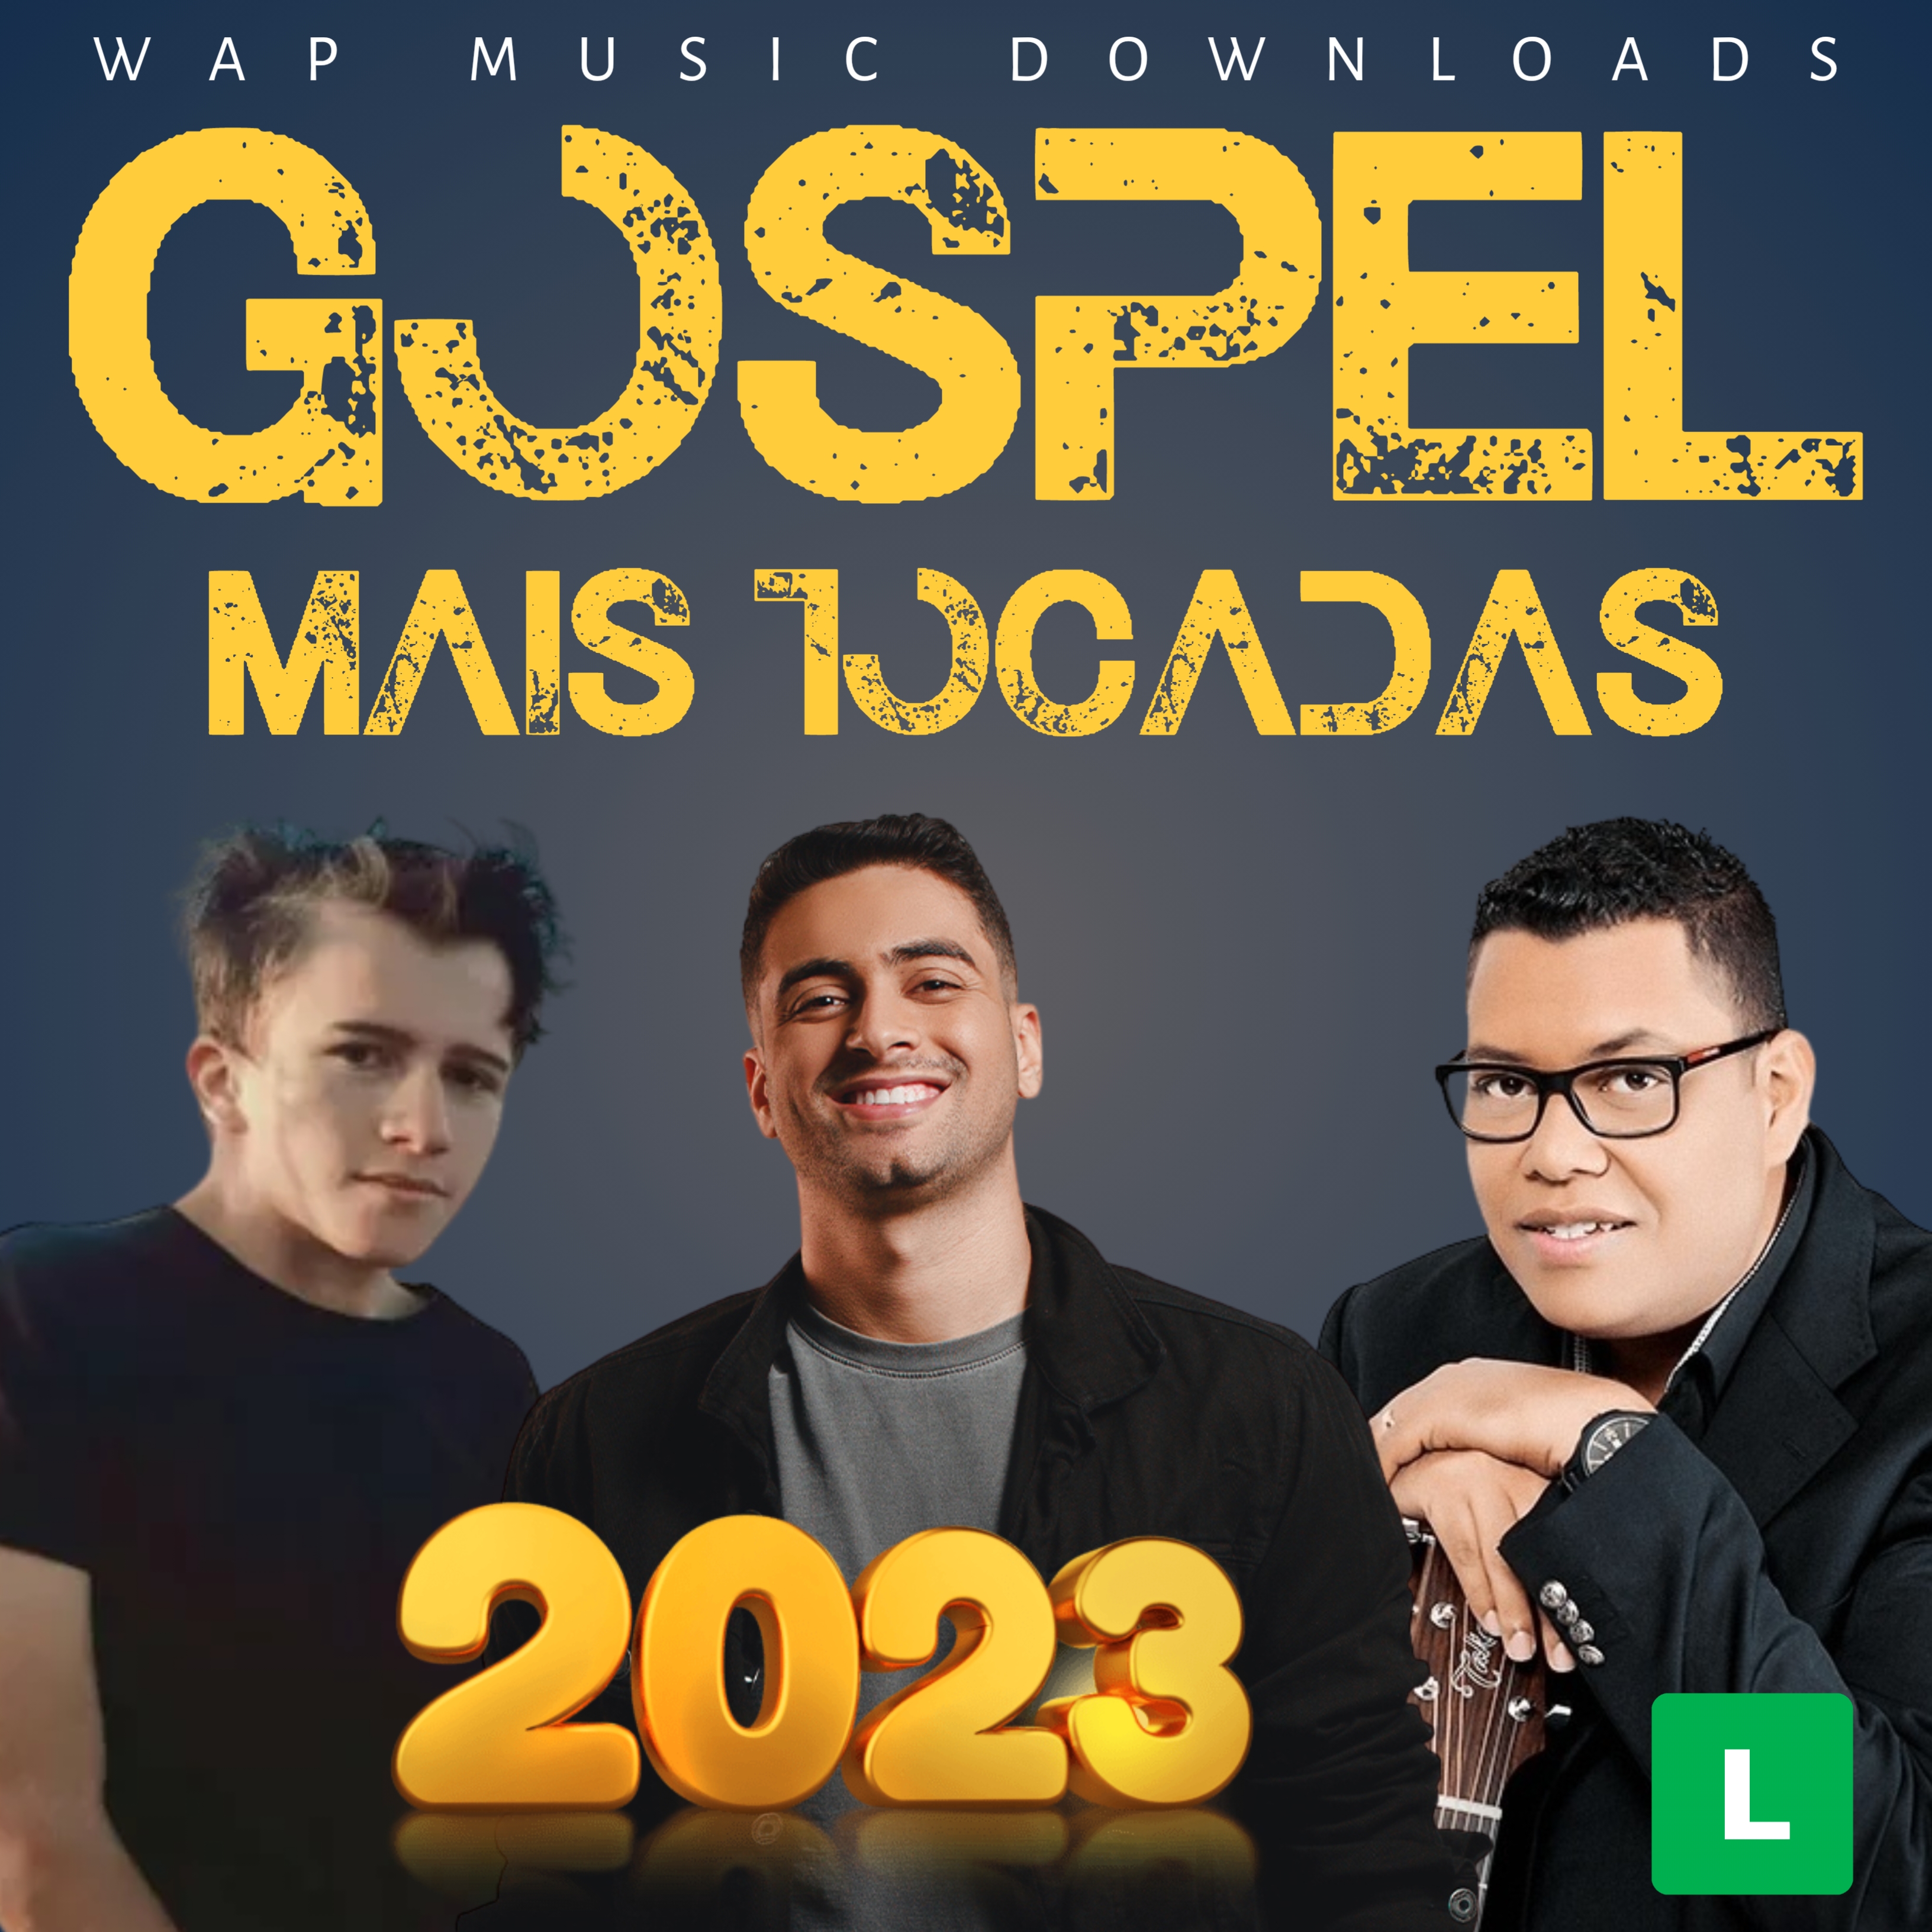 Músicas gospel mais tocadas de 2022 - Playlist 